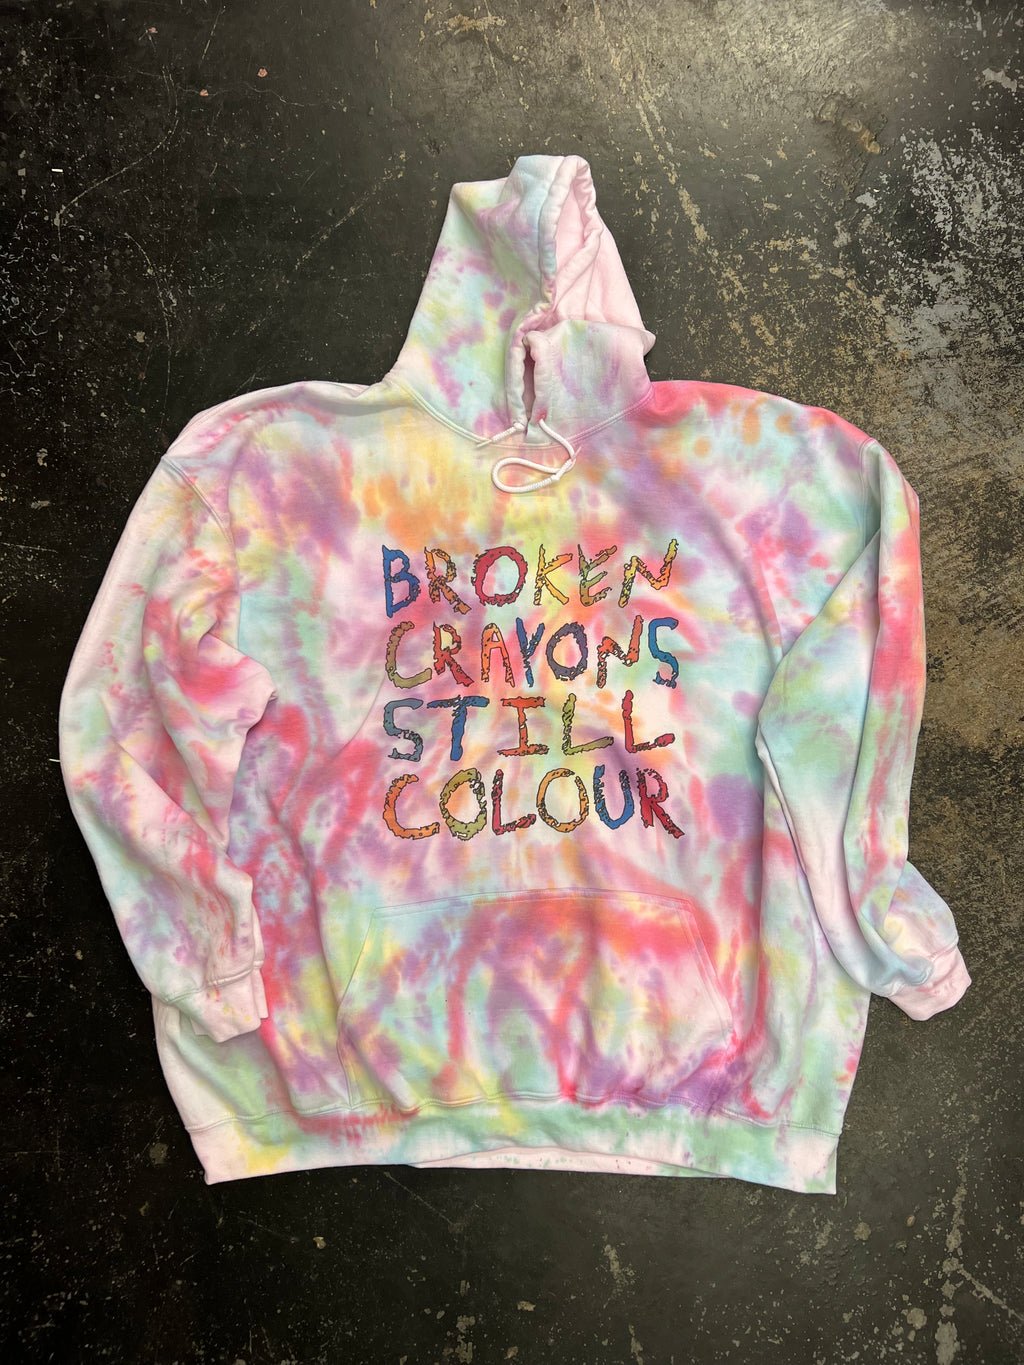 Broken crayons still colour